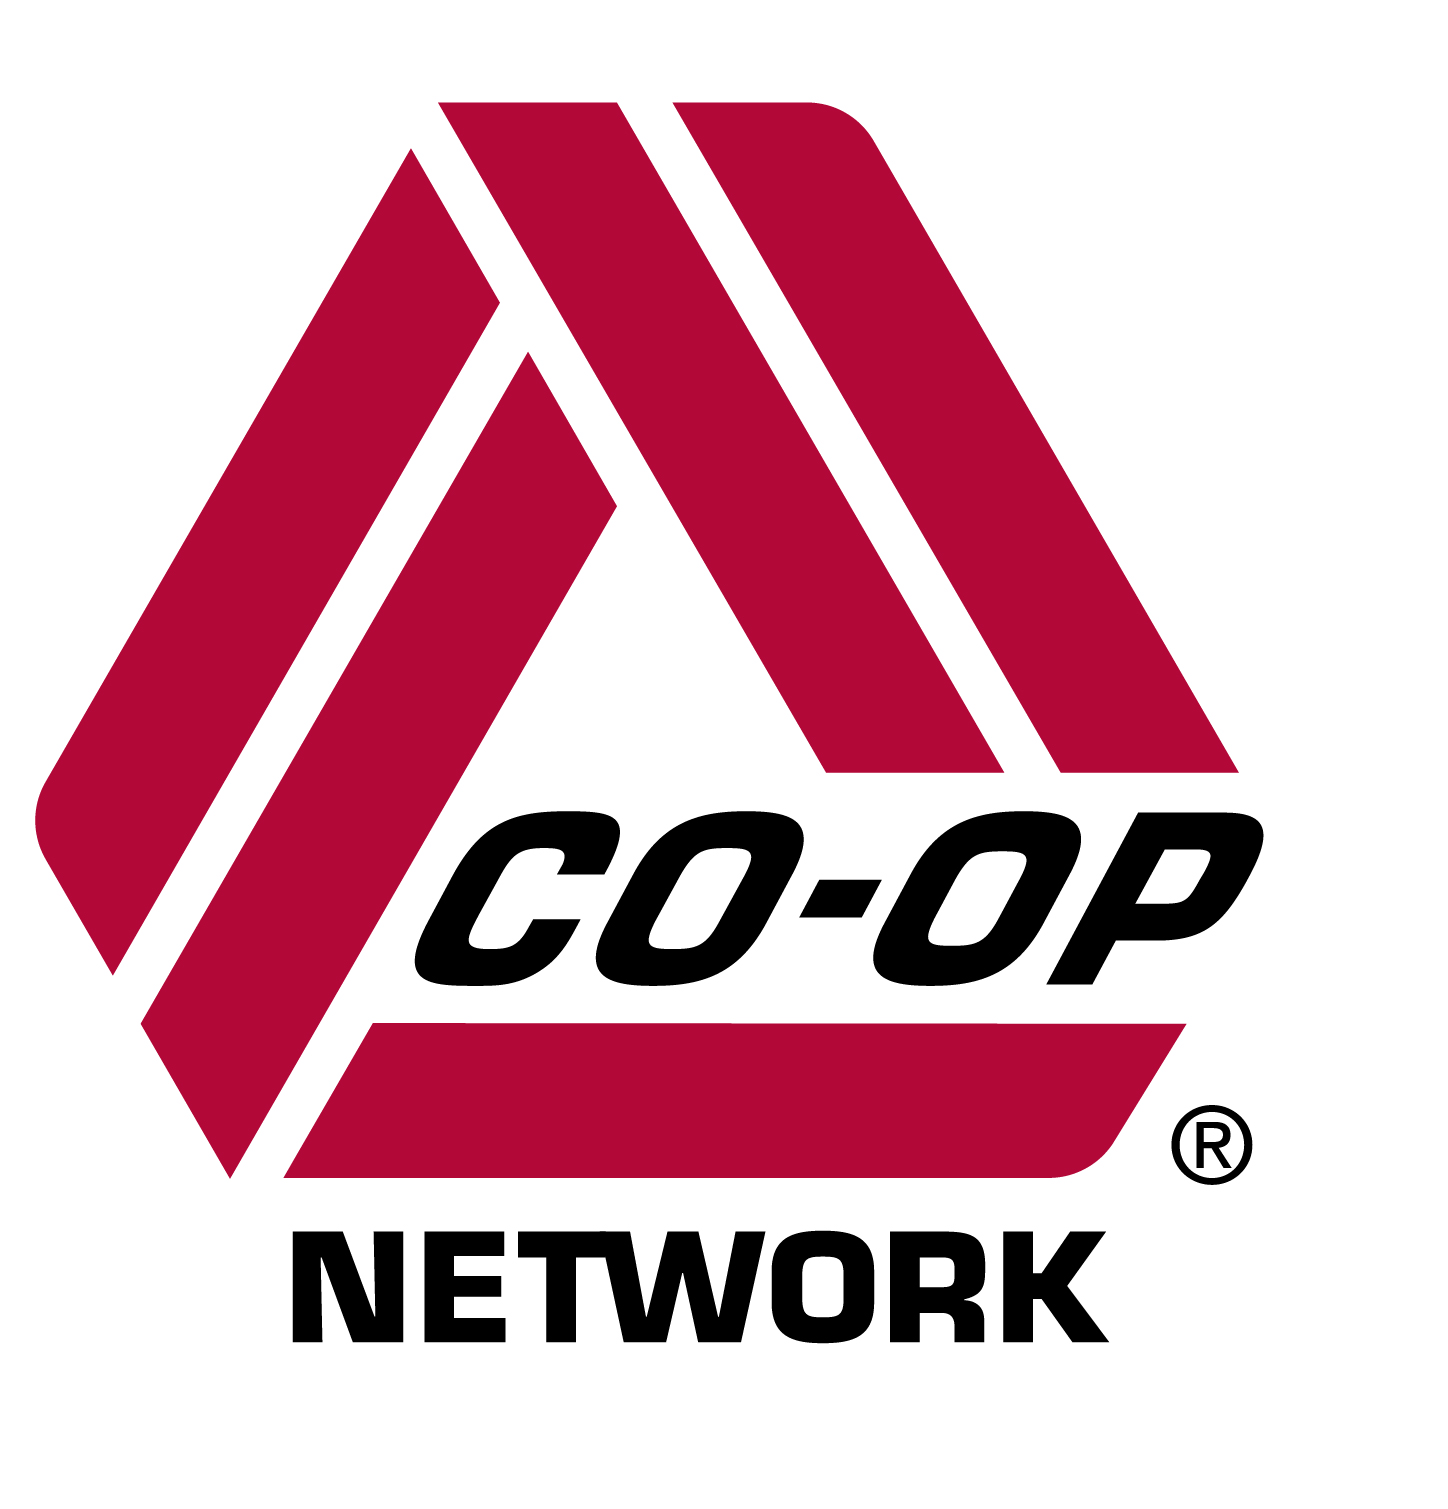 COOP Network